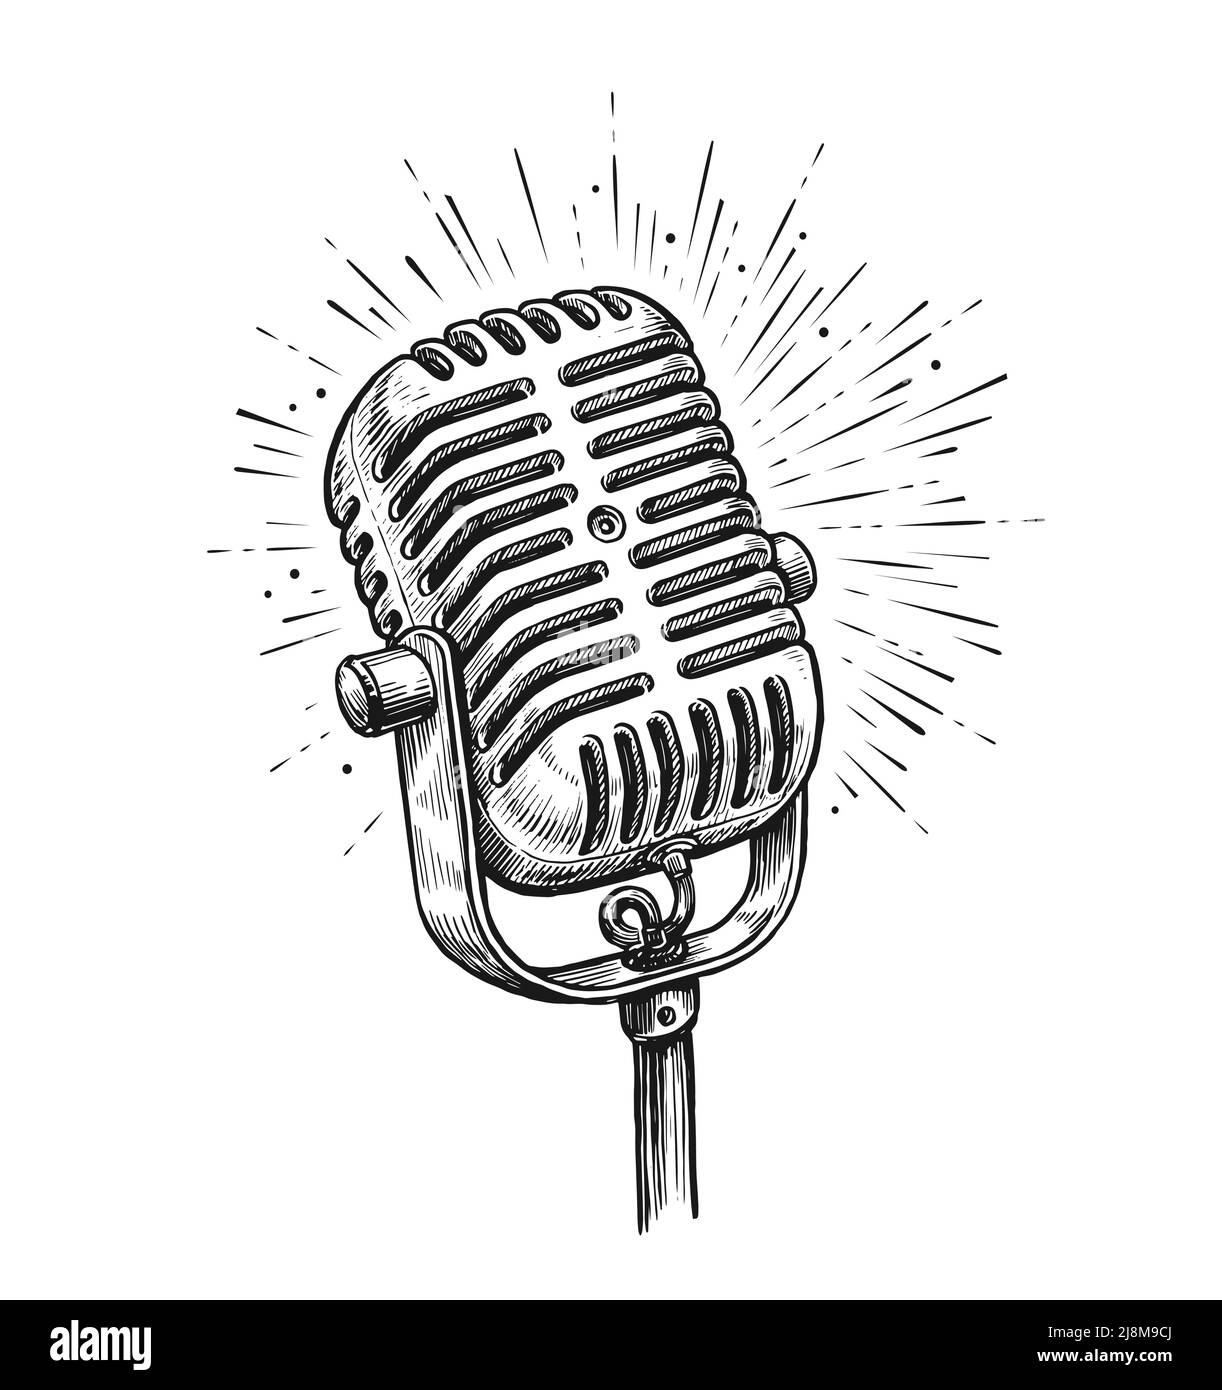 Vecchio microfono retro isolato su sfondo bianco. Illustrazione vettoriale vintage disegnata a mano Illustrazione Vettoriale